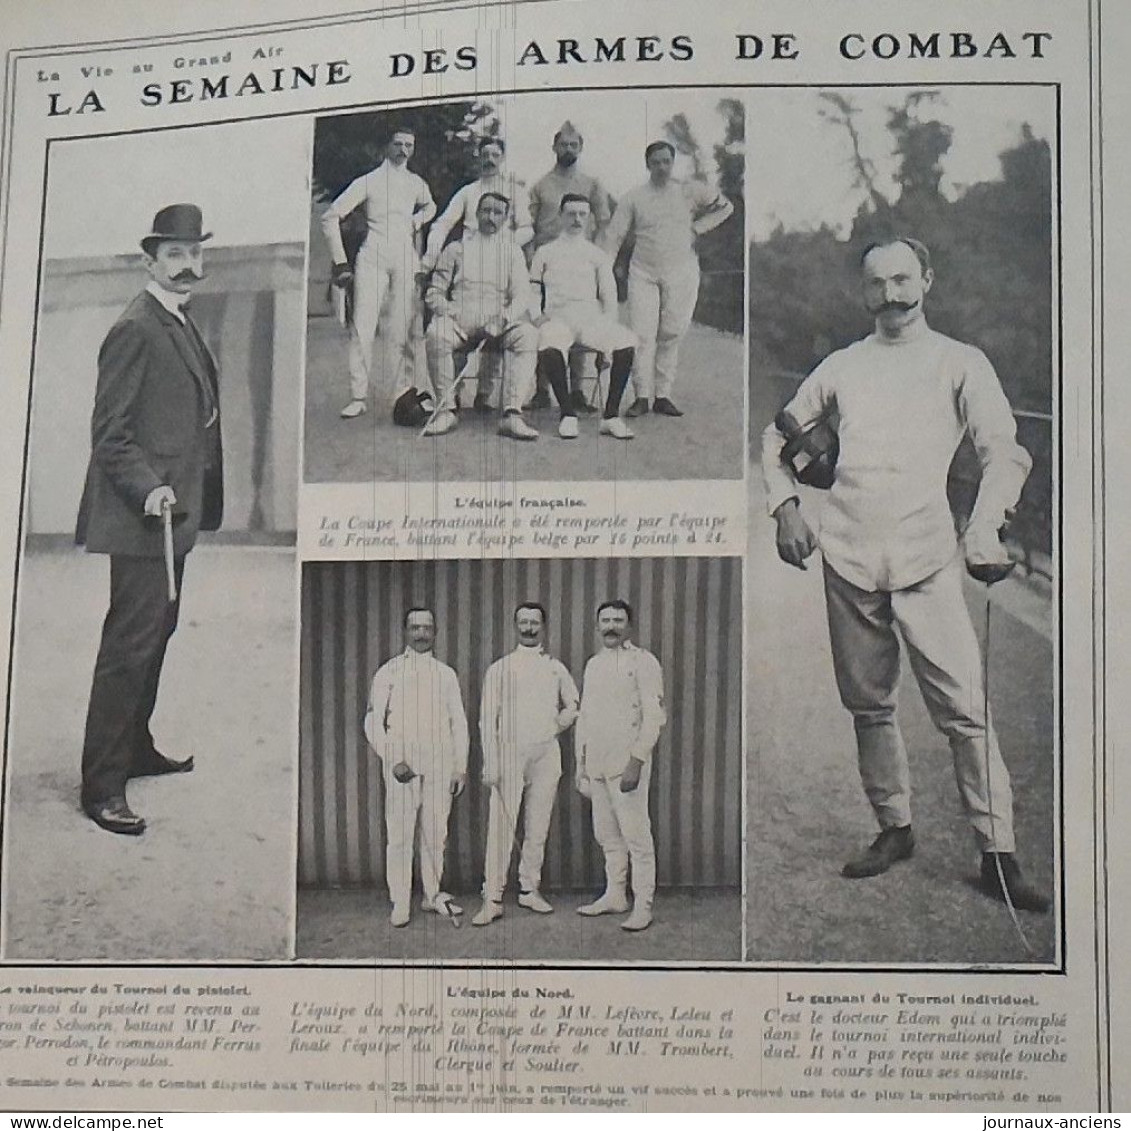 1907 LA SEMAINE DES ARMES DE COMBAT - DISPUTÉE AUX TUILLERIES - BARON DE SCHONEN - Dorteur EDOM - EQUIPE DU NORD - Martial Arts